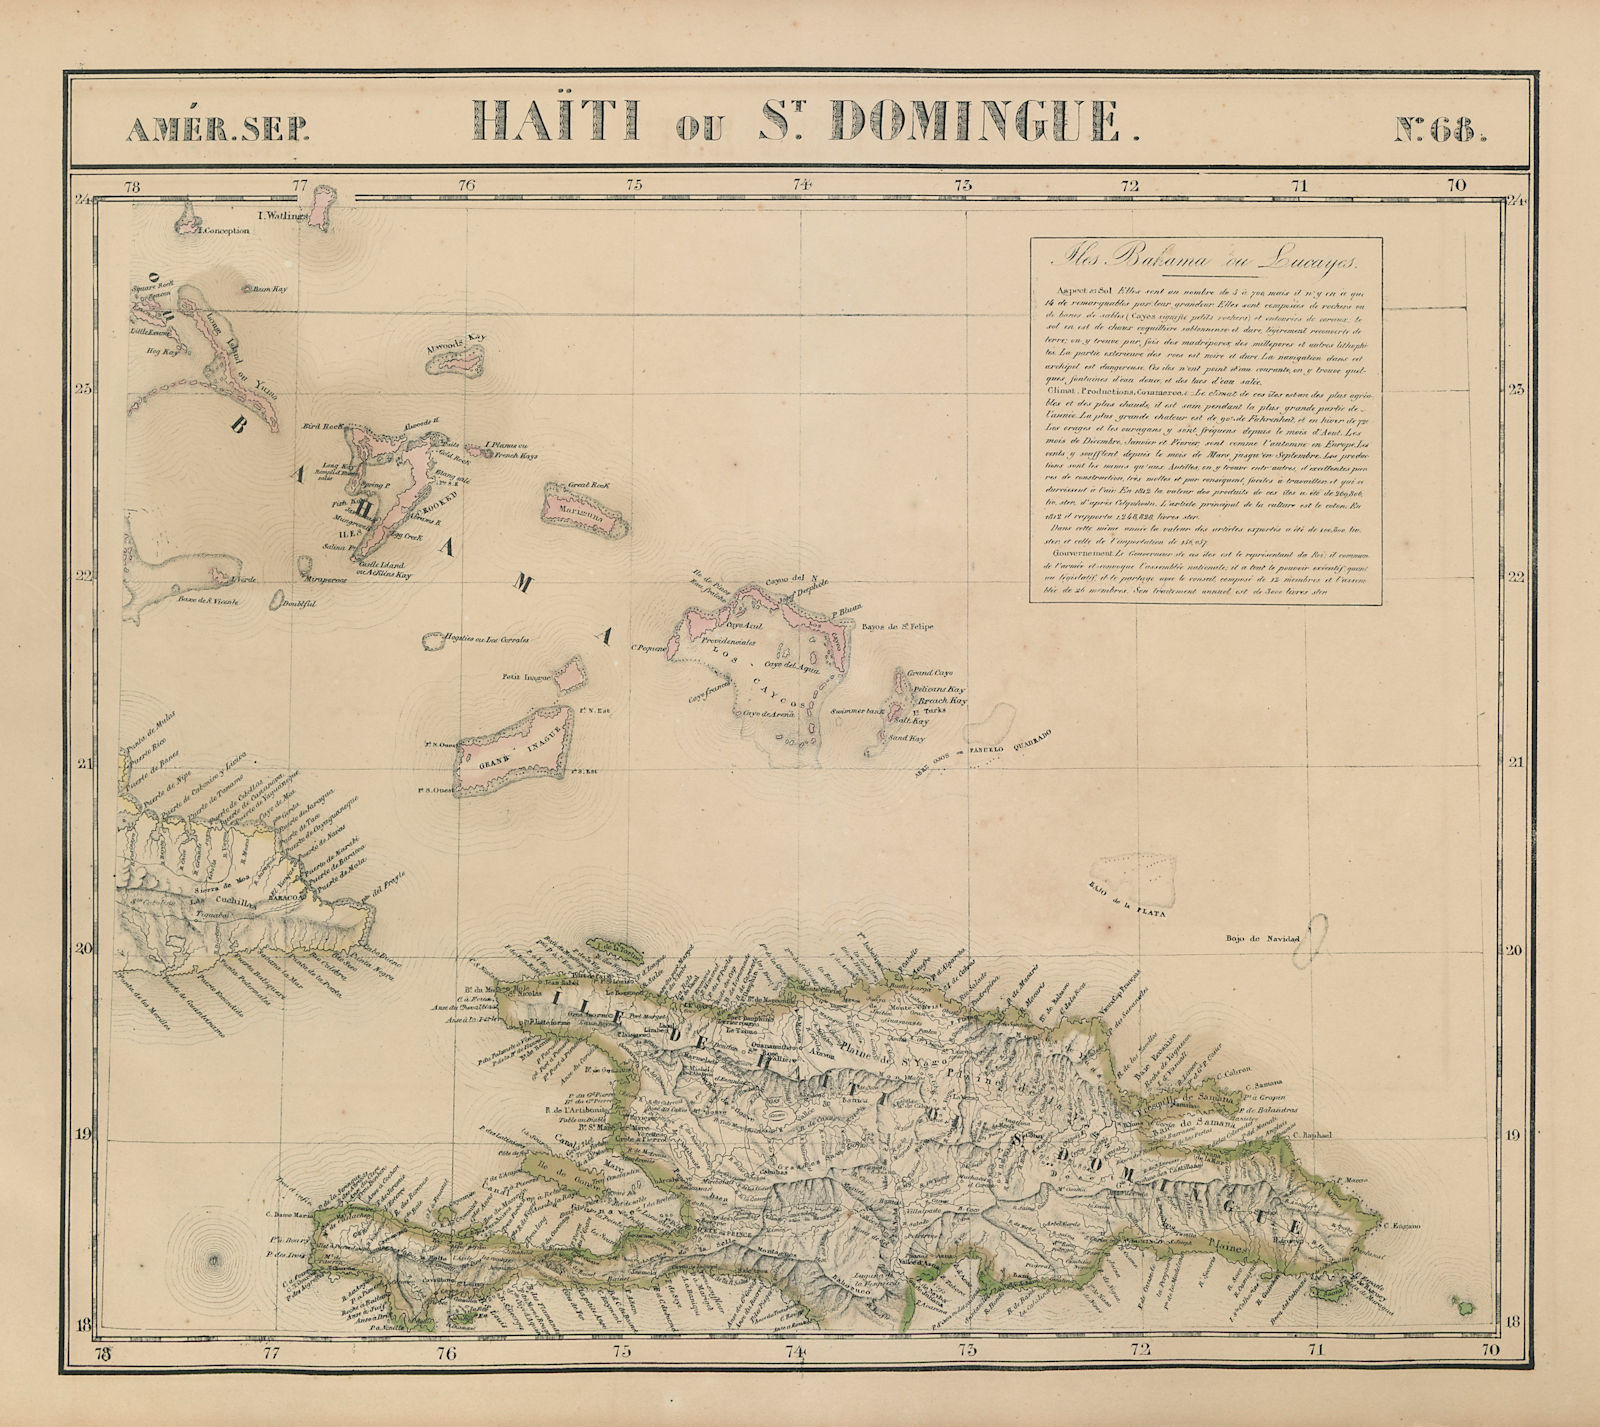 Amér Sep Haiti Domingue 68 Hispaniola Turks Caicos Bahamas VANDERMAELEN 1827 map